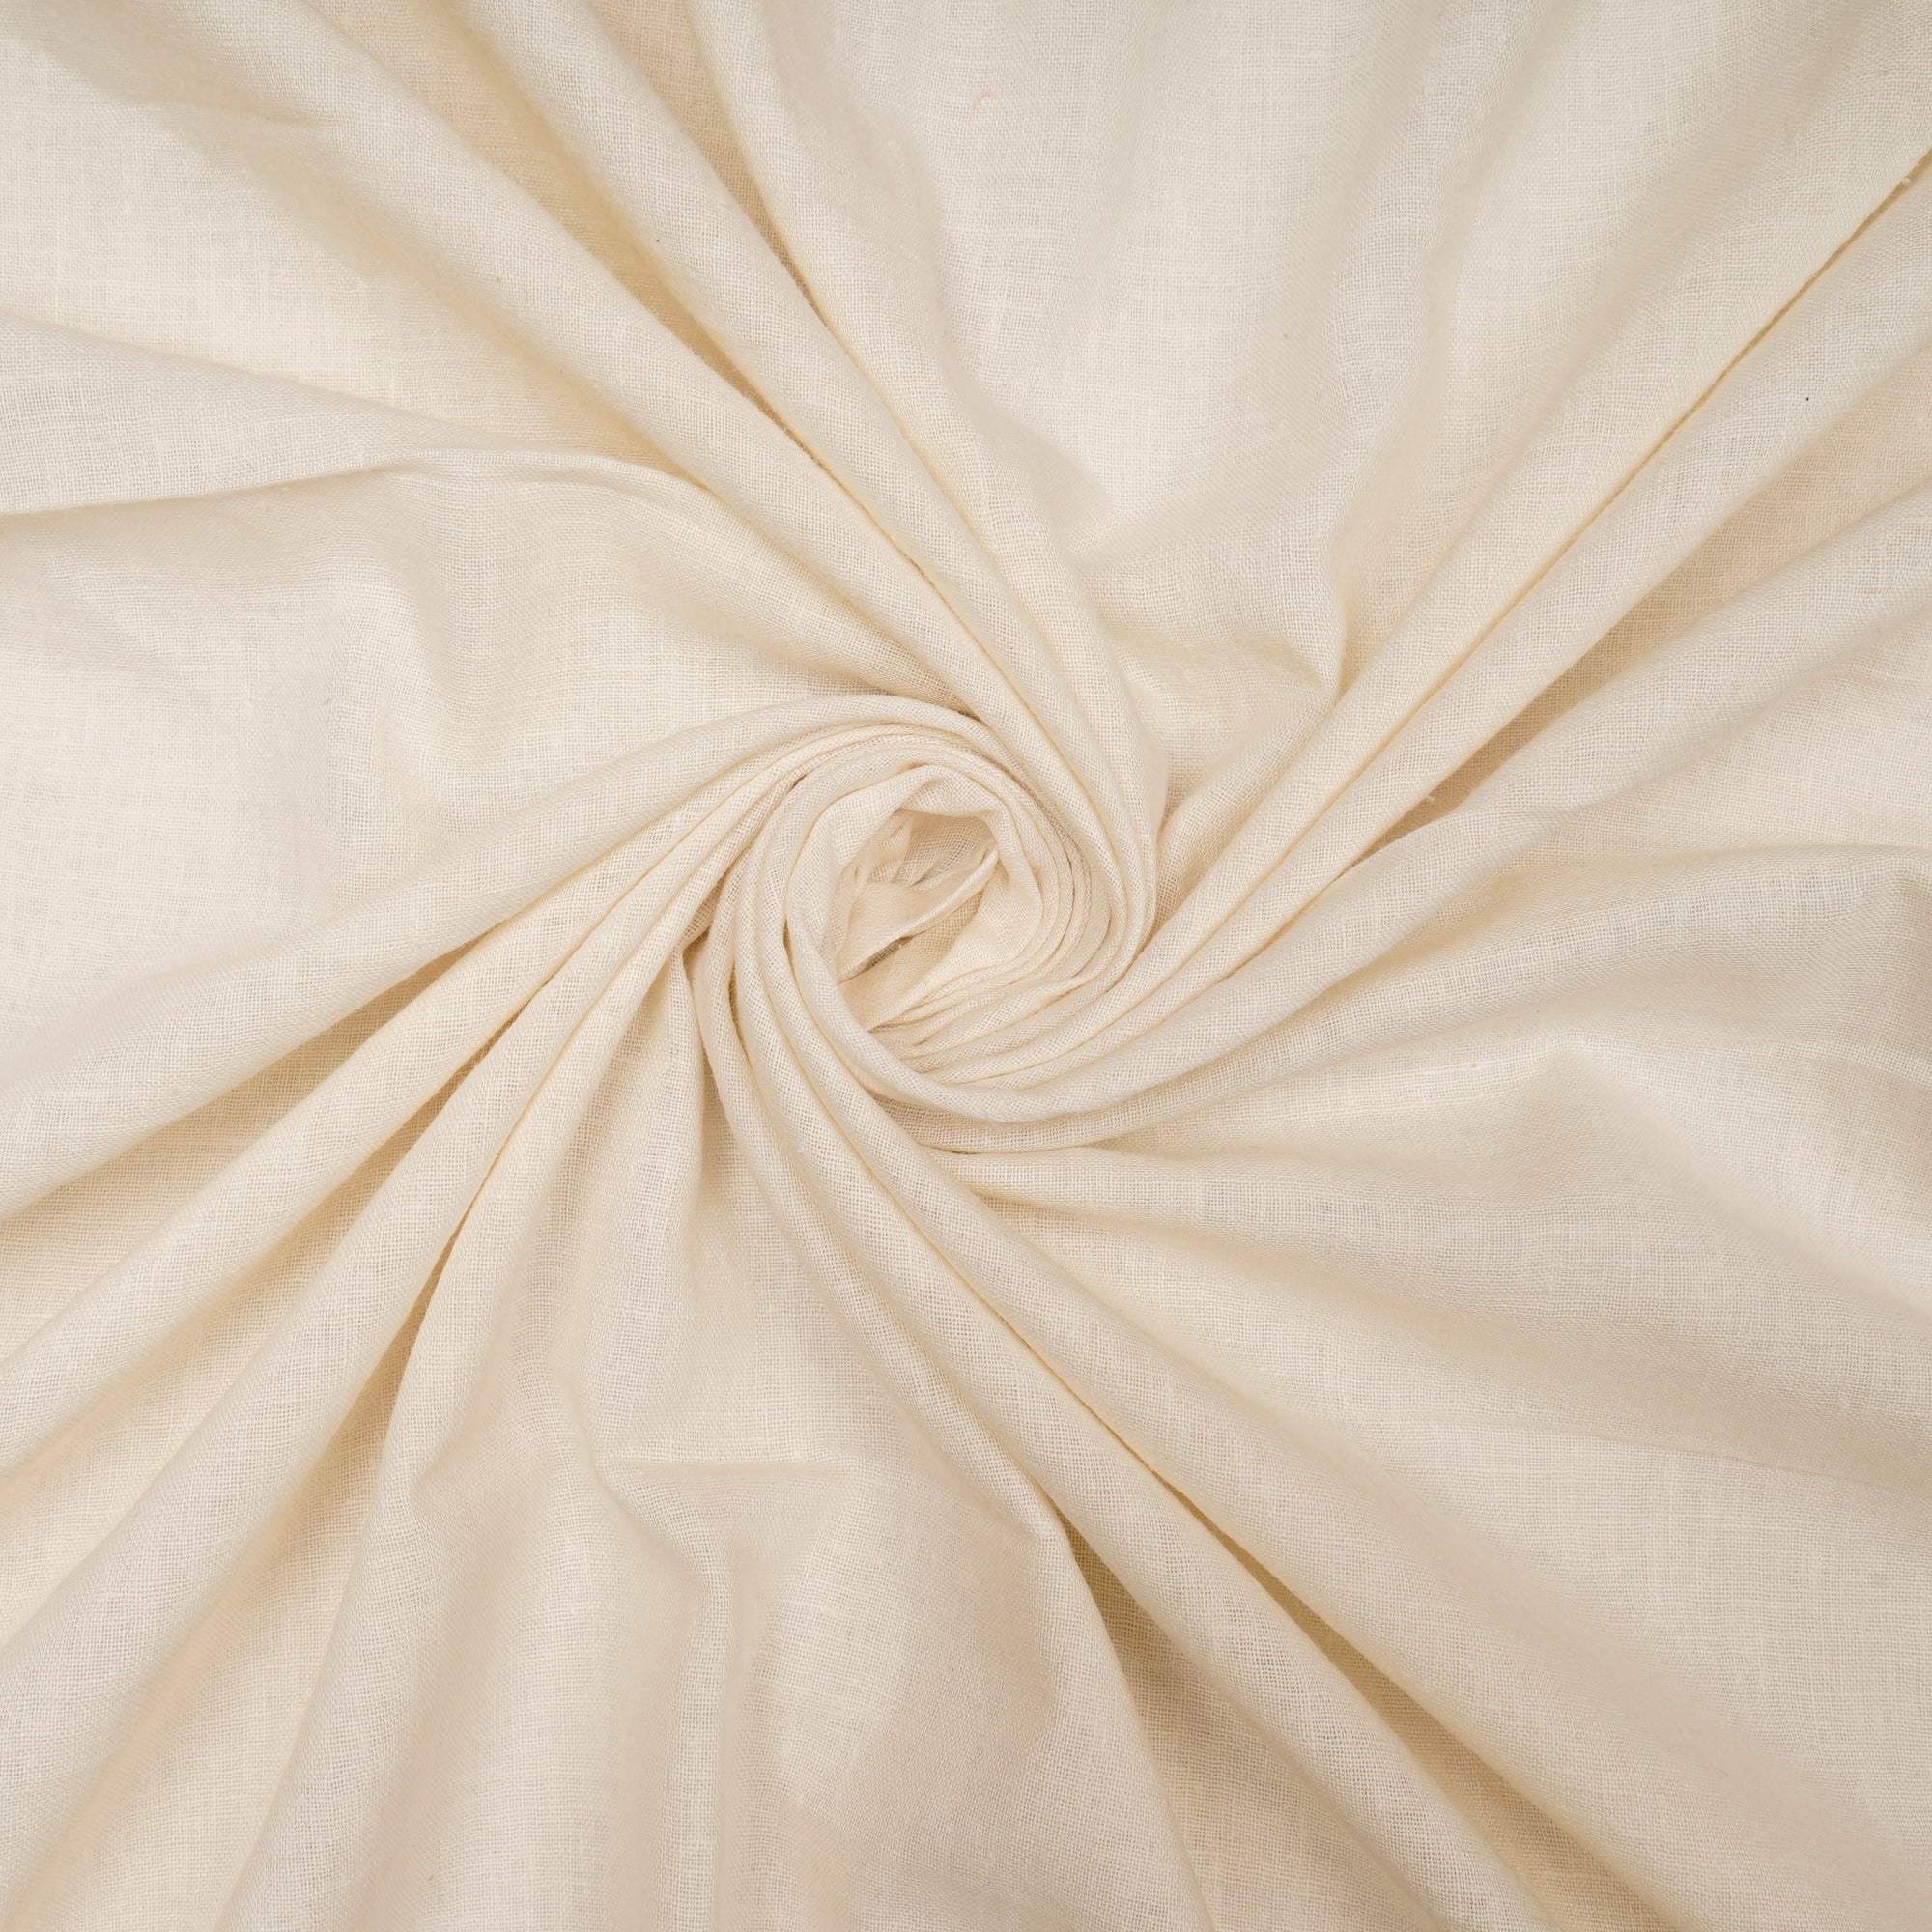 Cream Handwoven Handspun Muslin Cotton Fabric